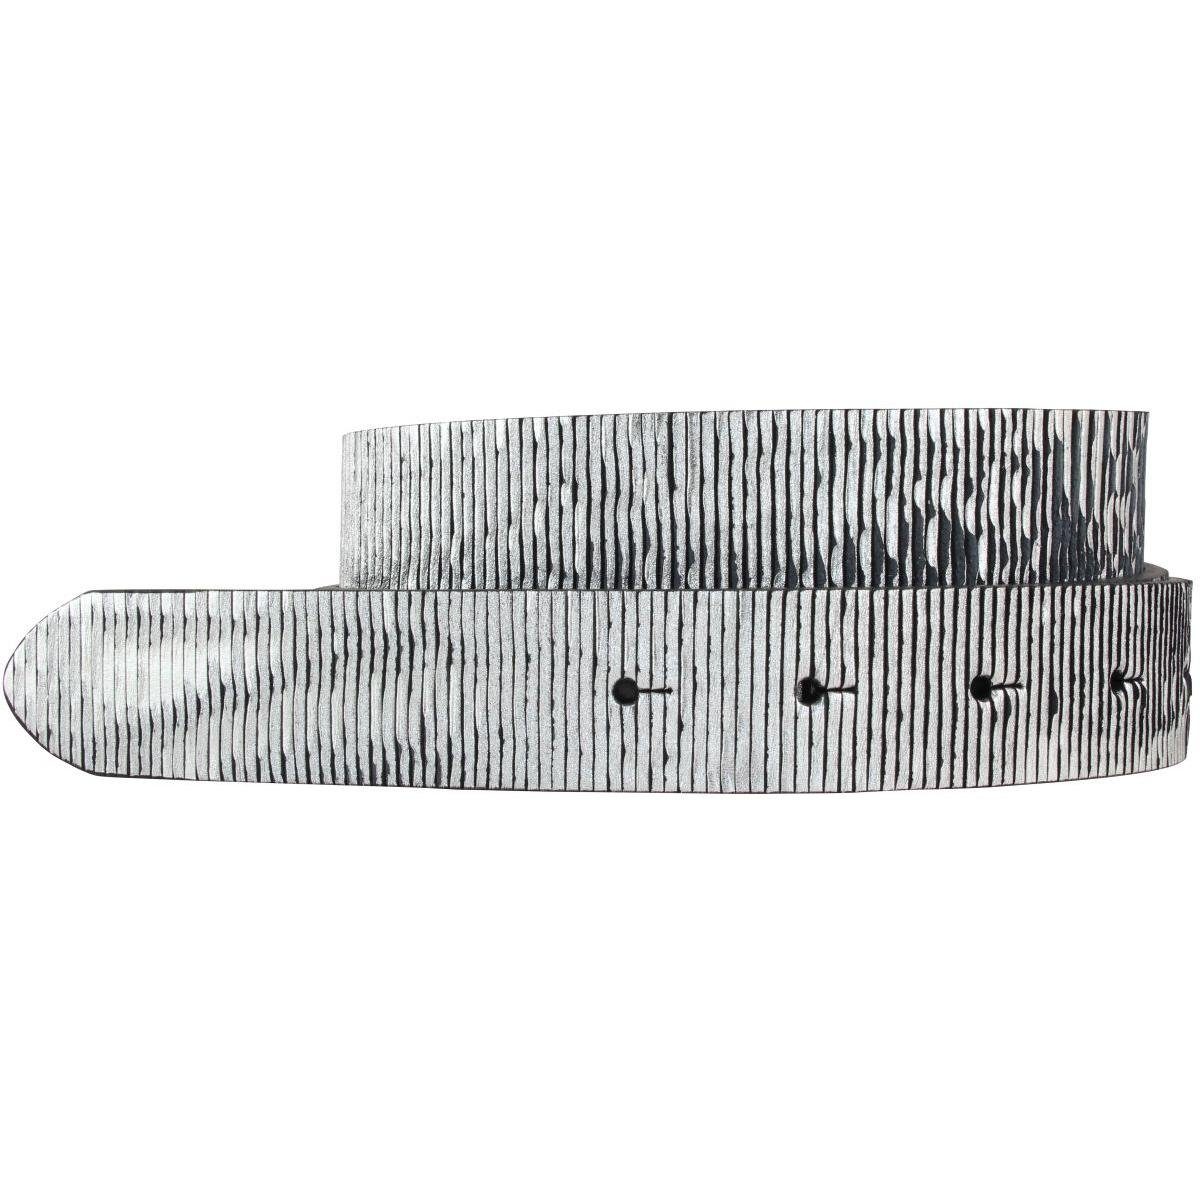 BELTINGER Ledergürtel Gürtel cm 3,0 aus - Schnalle Vollrindleder Leder-Gür Metallik ohne Schwarz Metall-Optik